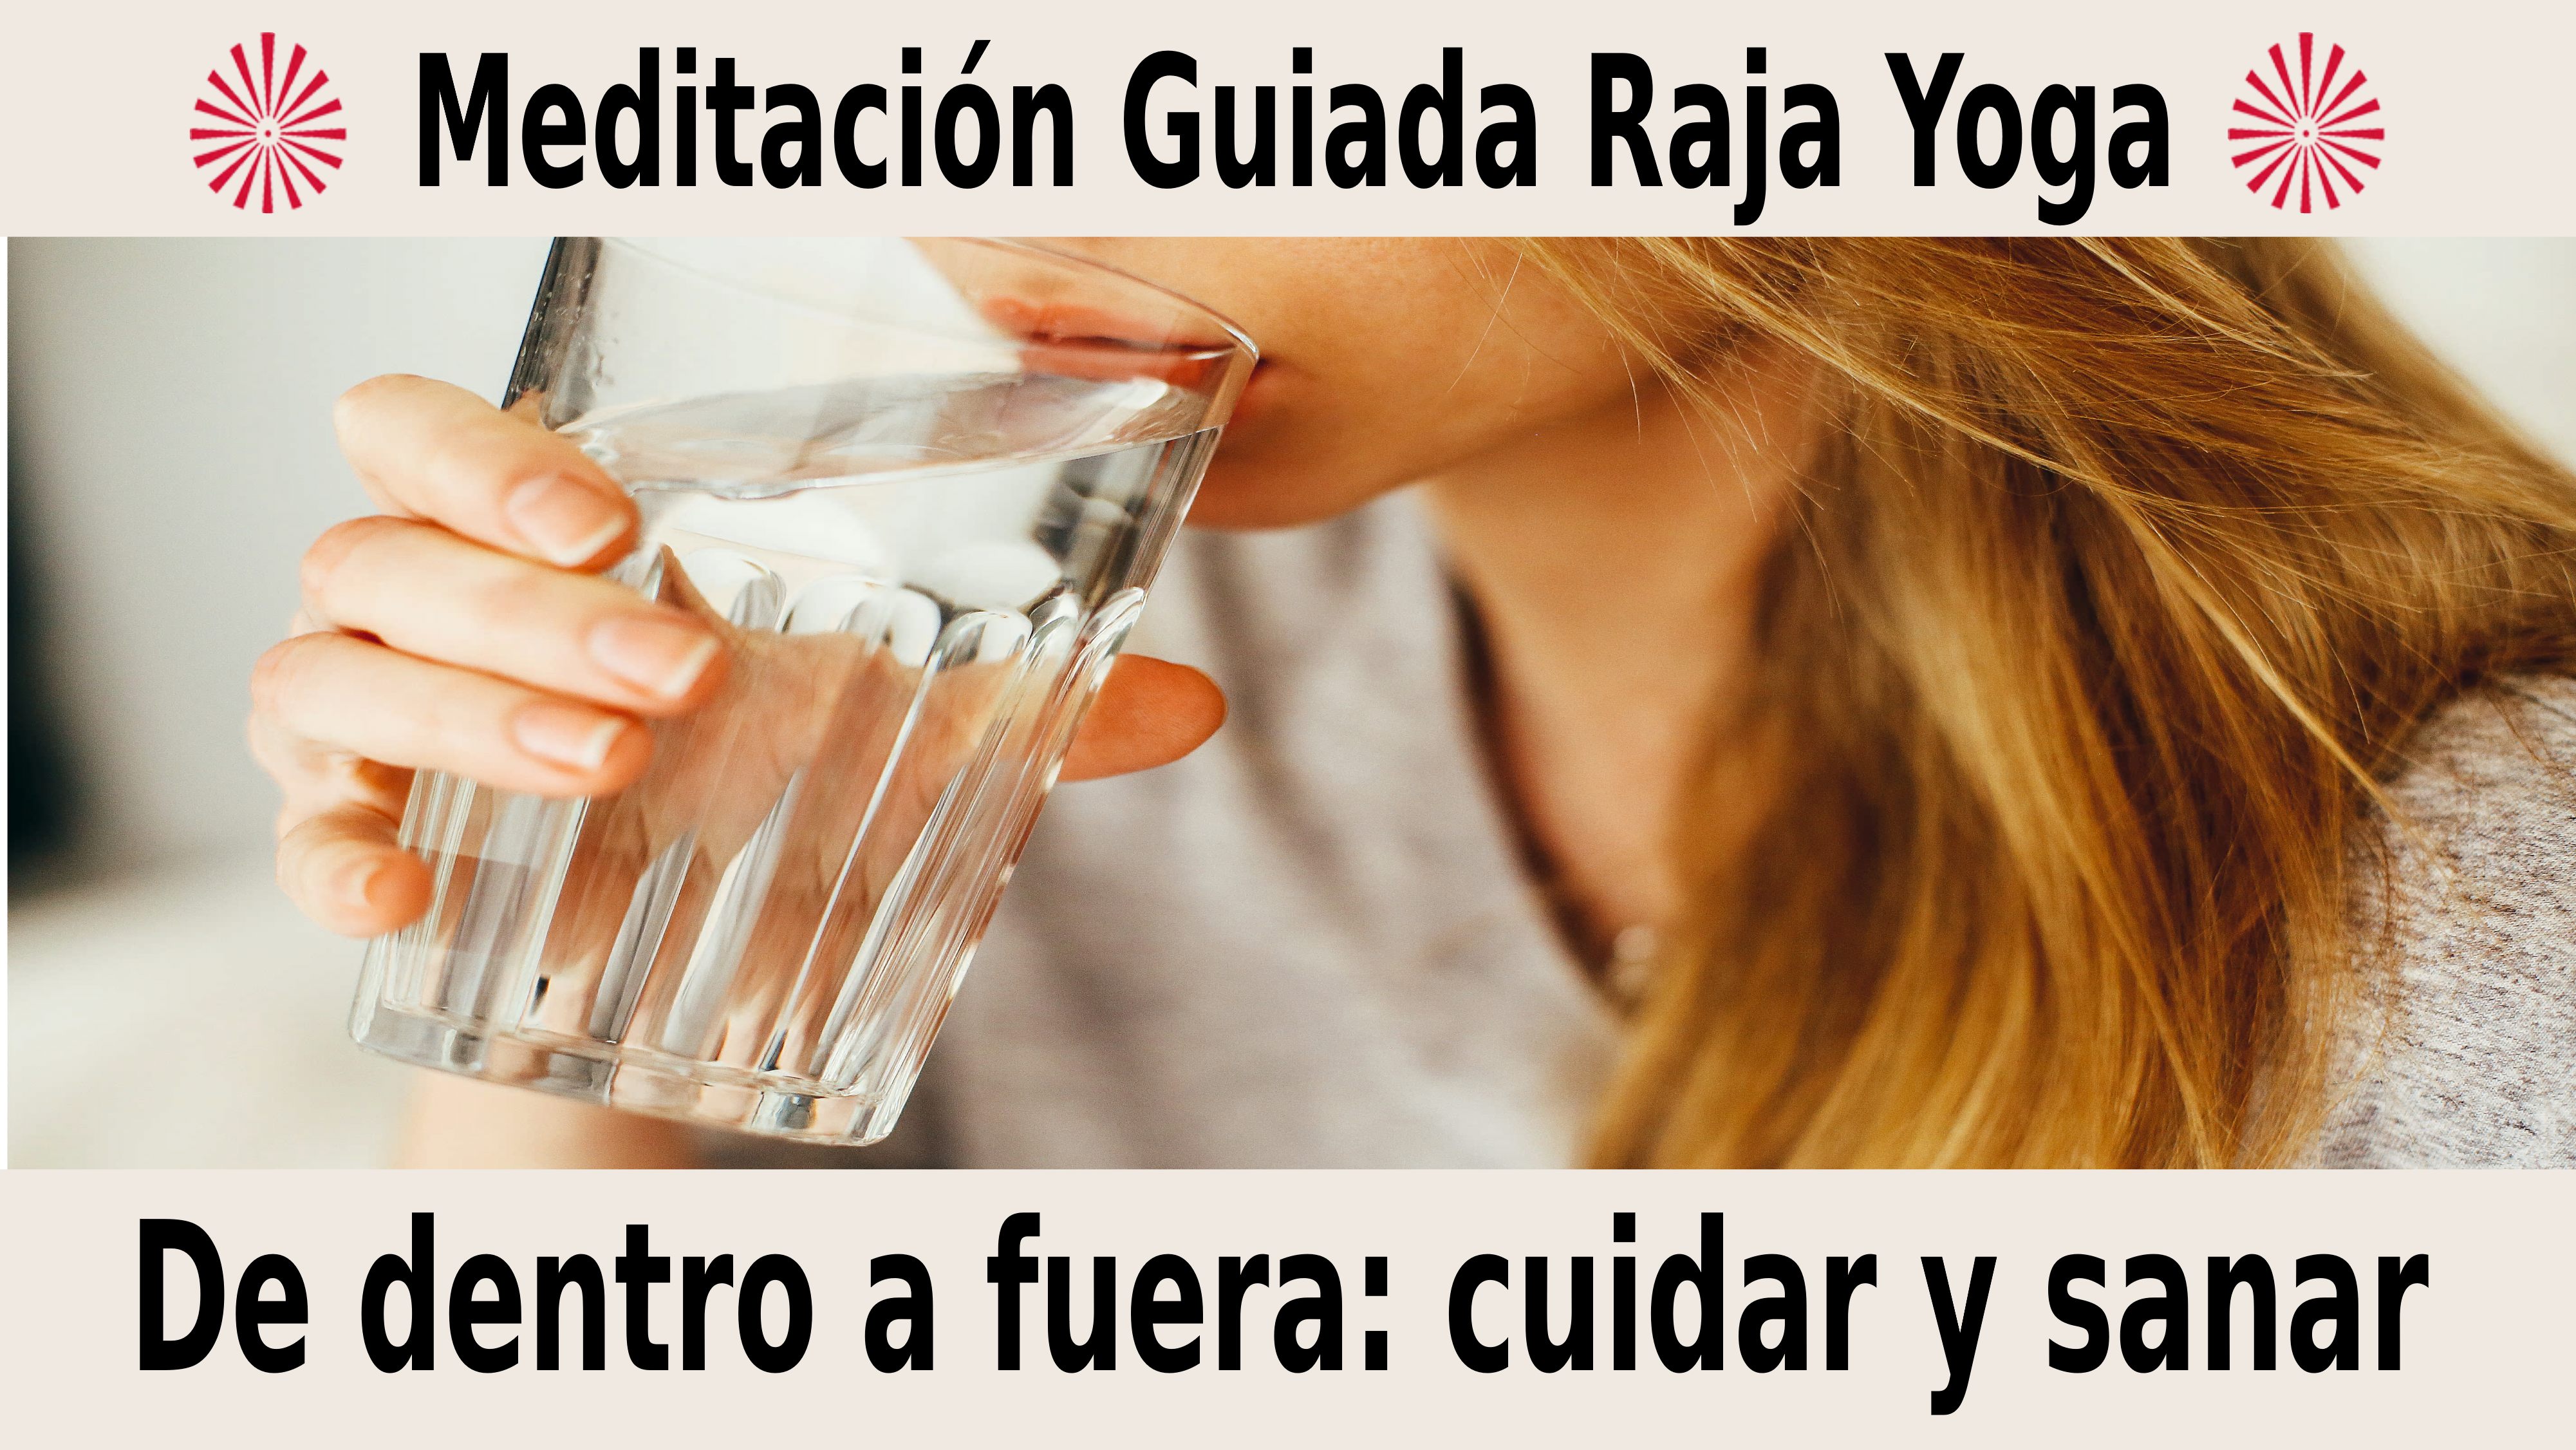 Meditación Raja Yoga:  De dentro a fuera cuidar y sanar (6 Noviembre 2020) On-line desde Barcelona